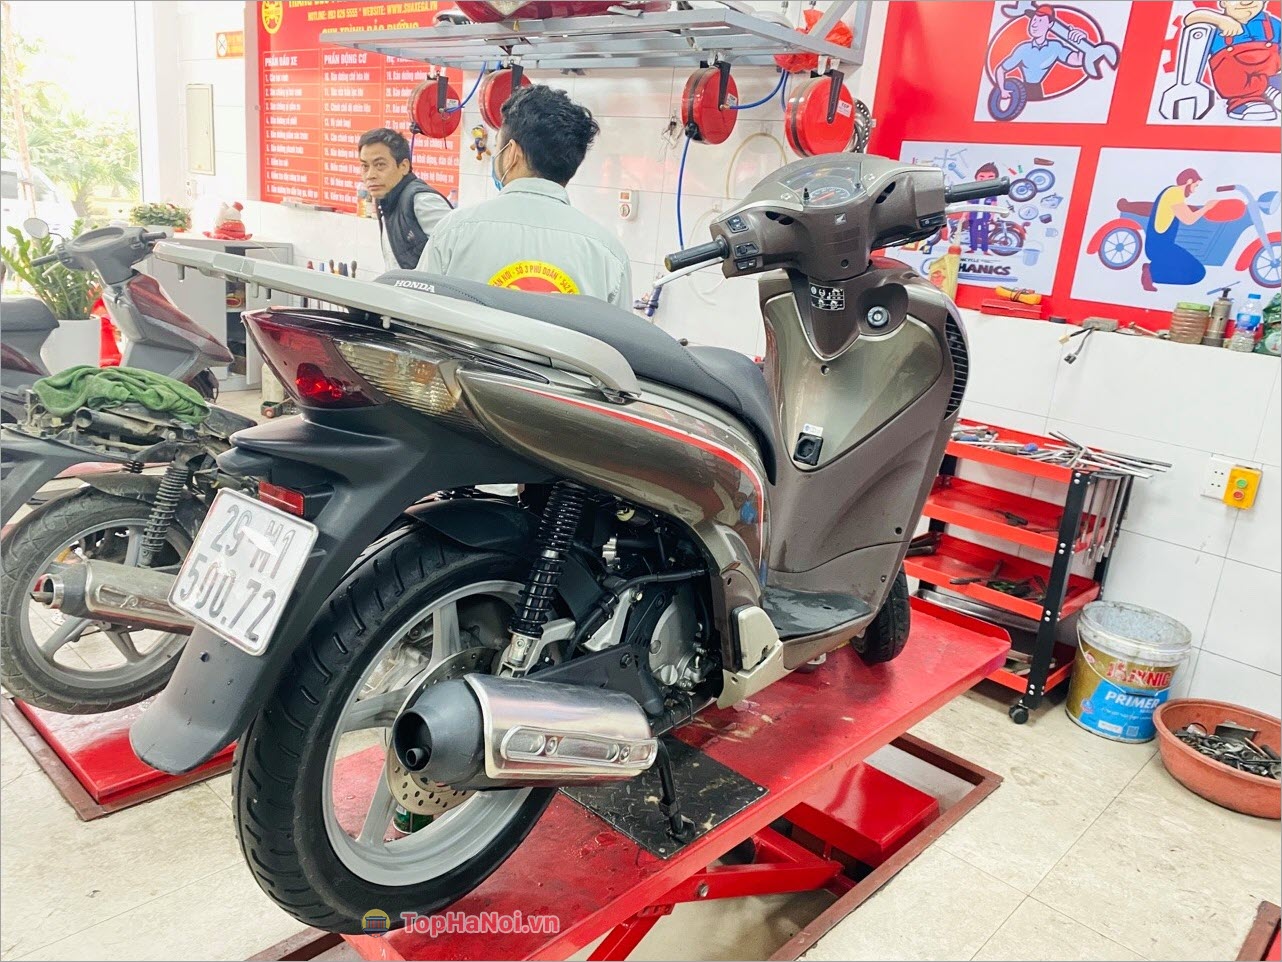 Thắng Béo – Chuyên sửa chữa bảo dưỡng xe máy tại Hà Nội